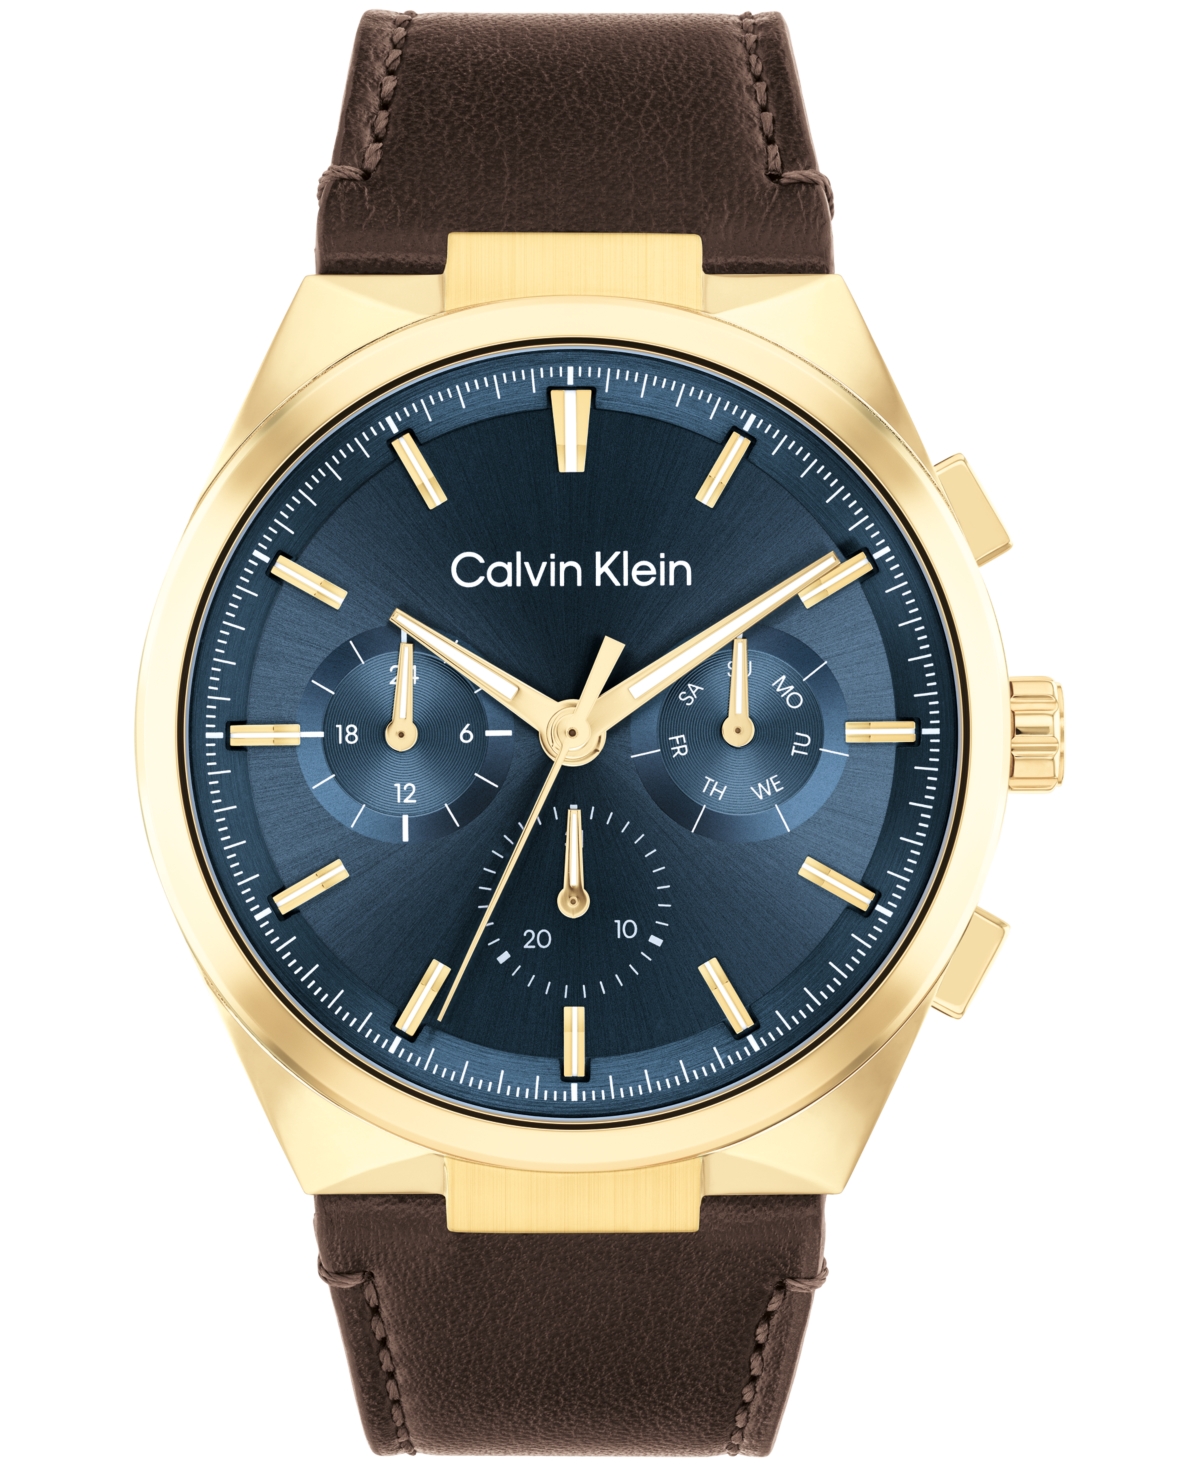 Calvin Klein Men's Distinguish Brown Leather Strap Watch 44mm